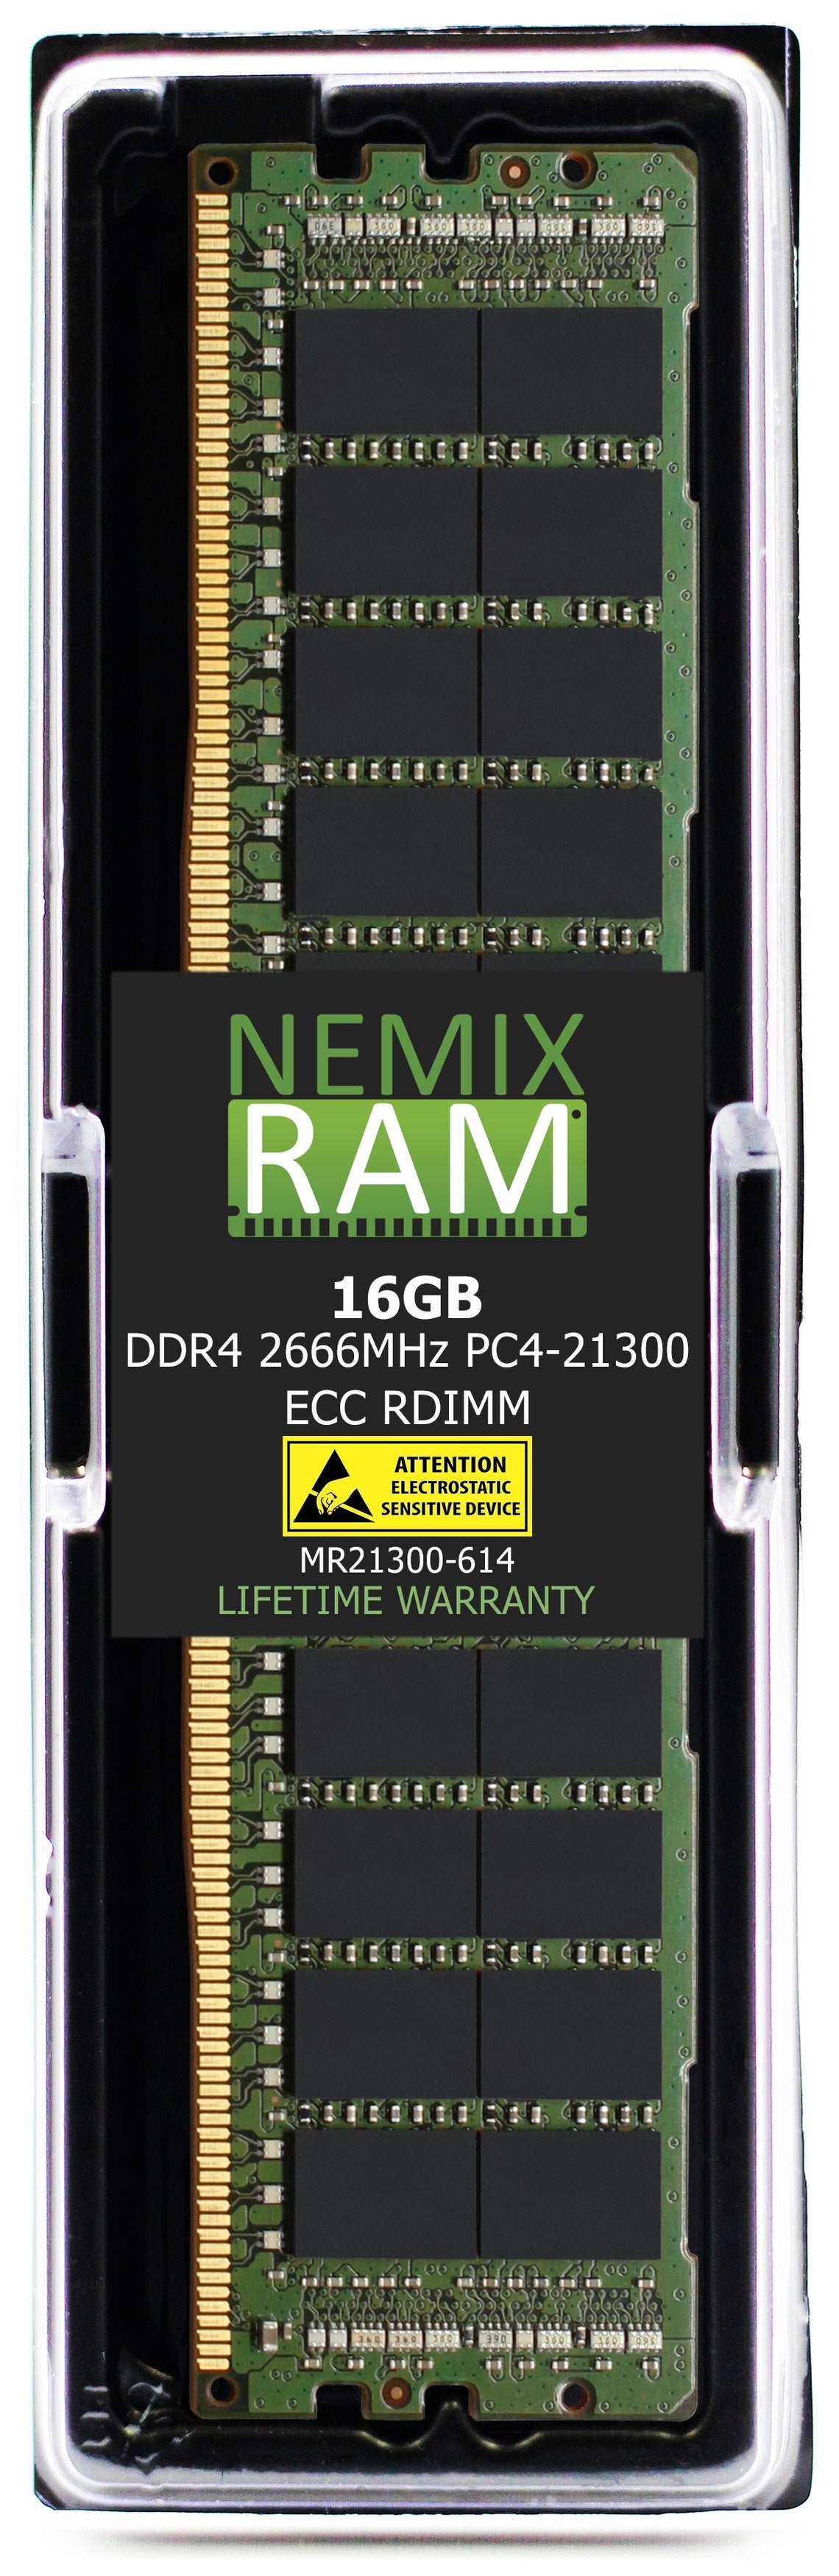 Hynix HMA82GR7CJR4N-VK 16GB DDR4 2666MHZ PC4-21300 RDIMM Compatible Memory Module